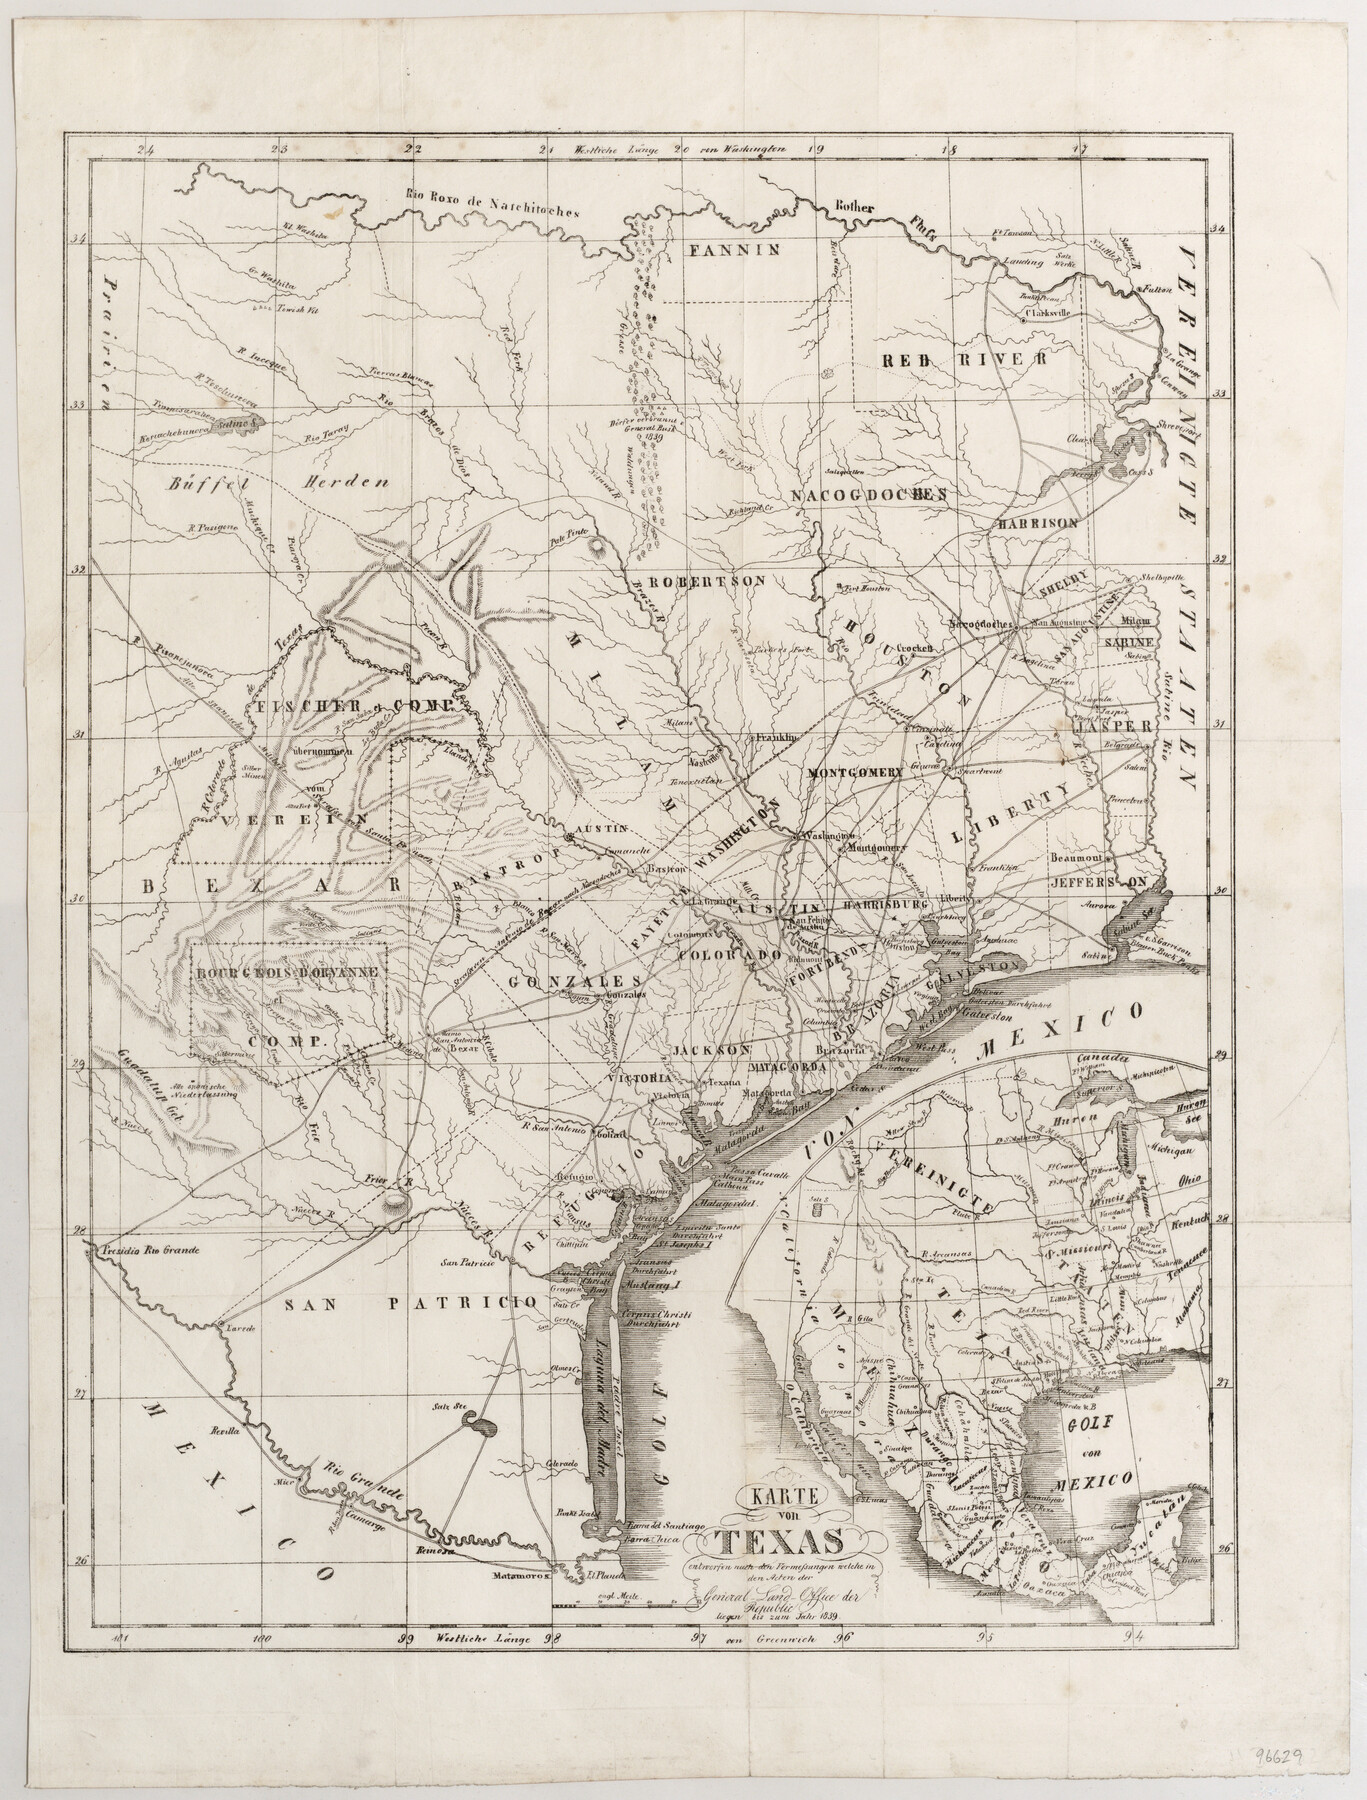 96629, Karte von Texas entworfen nach den Vermessungen welche in den Acten der General Land Office der Republic liegen bis zum Jahr 1839, General Map Collection